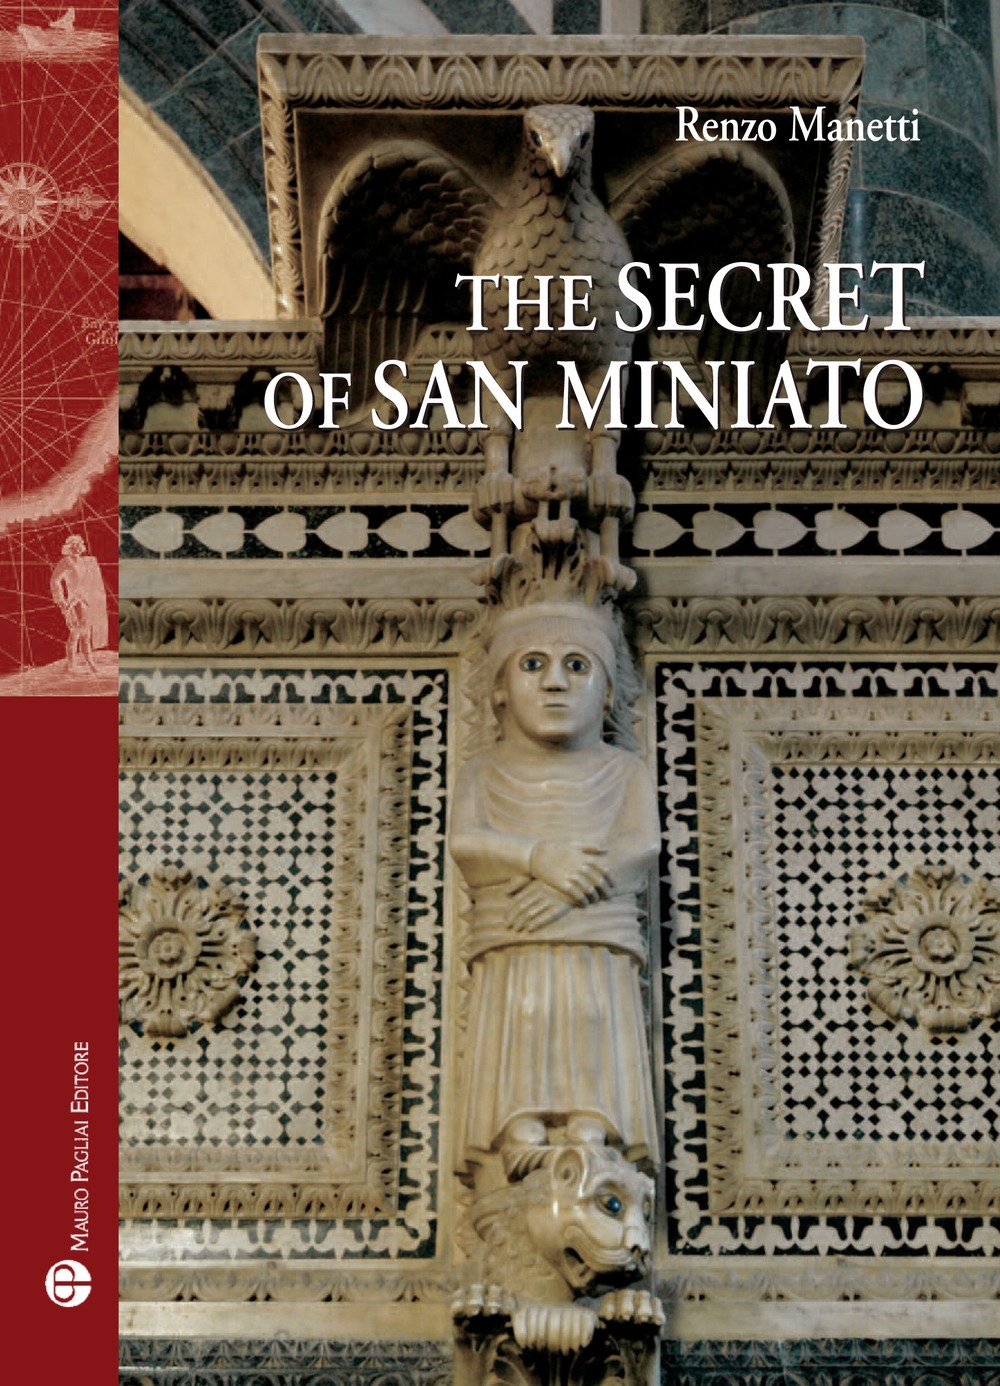 Libri Renzo Manetti - The Secret Of San Miniato NUOVO SIGILLATO, EDIZIONE DEL 21/11/2017 SUBITO DISPONIBILE